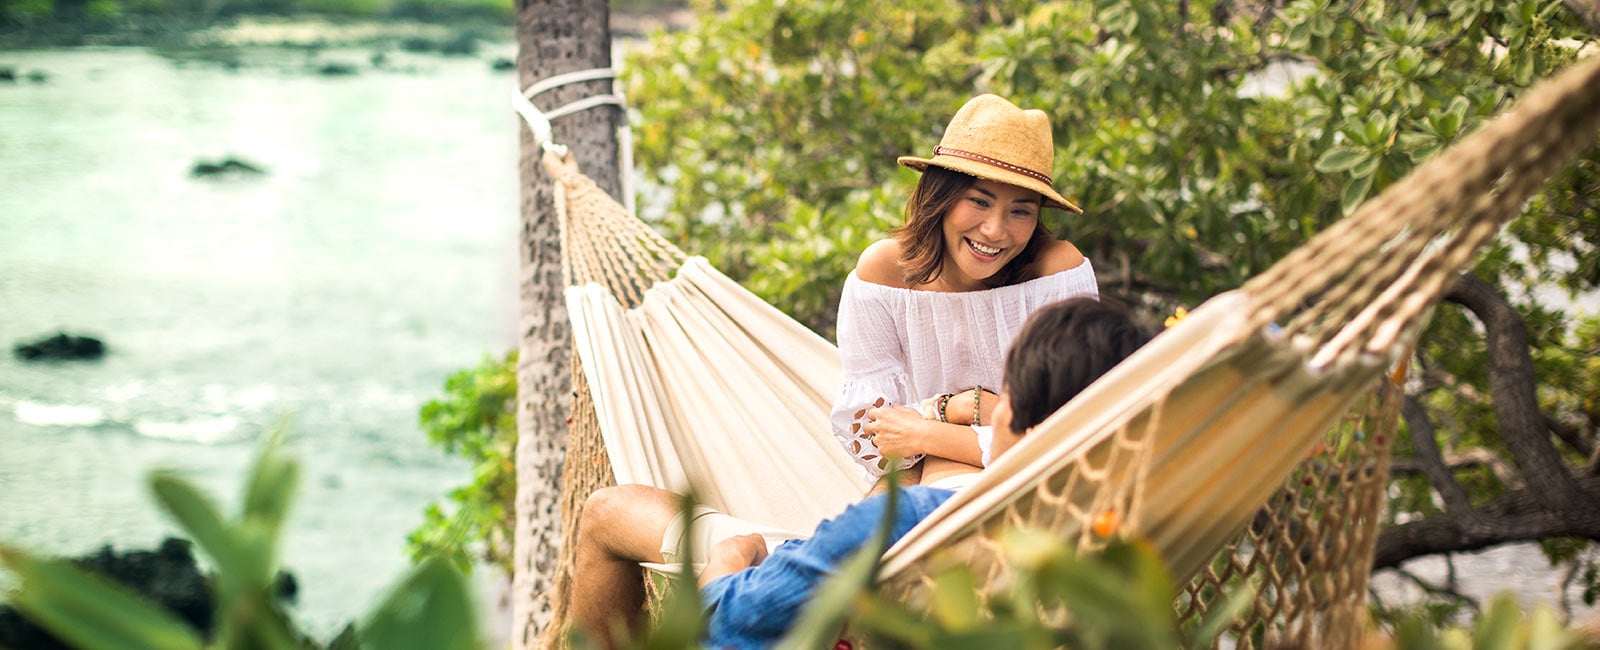 Enjoy a Hawaiian vacation with Hilton Grand Vacations